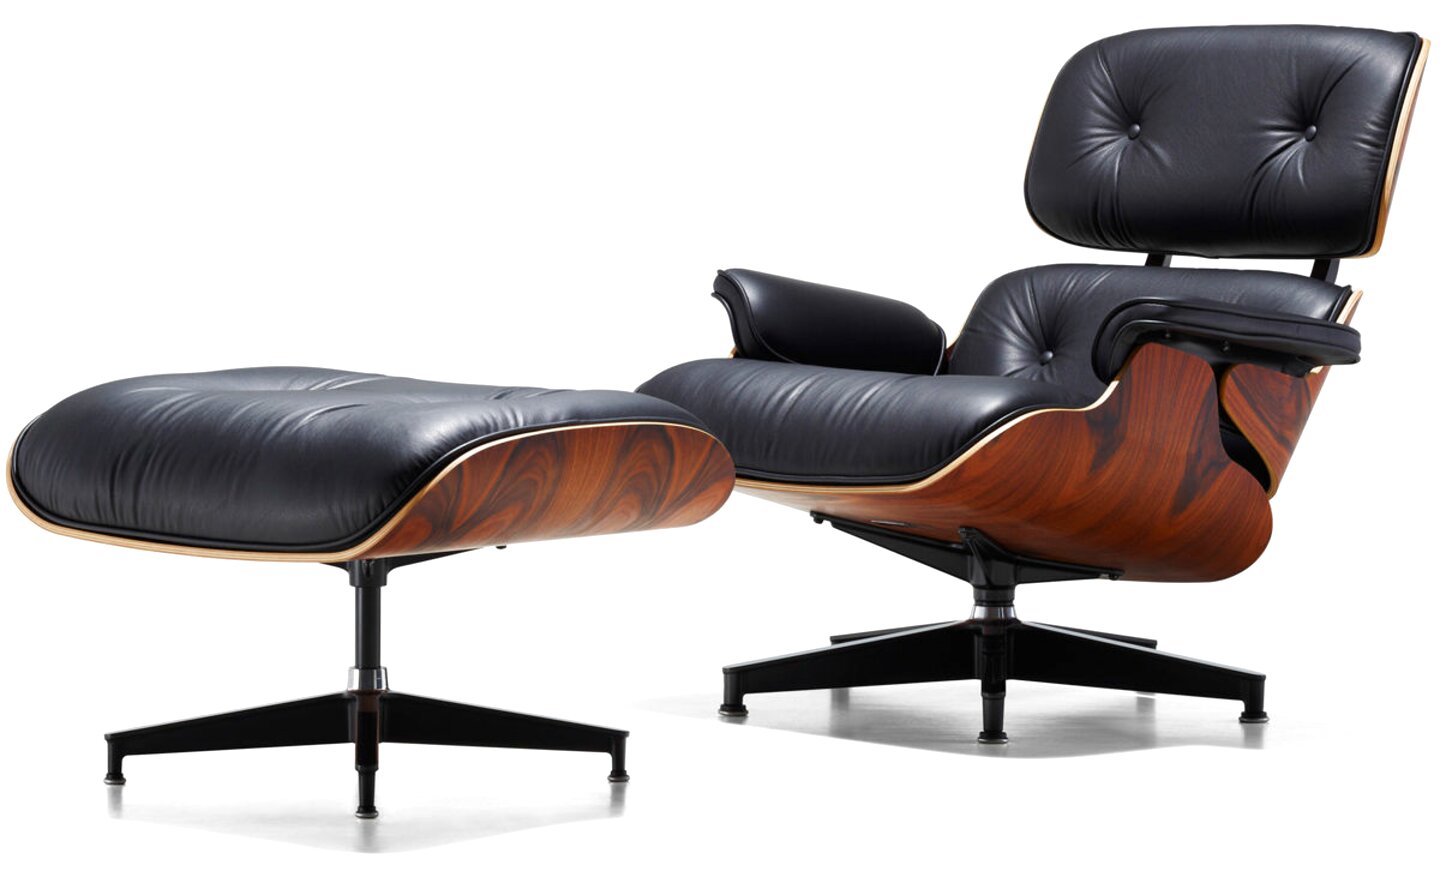 Charles Eames Original Chair gebraucht kaufen! Nur 4 St ...